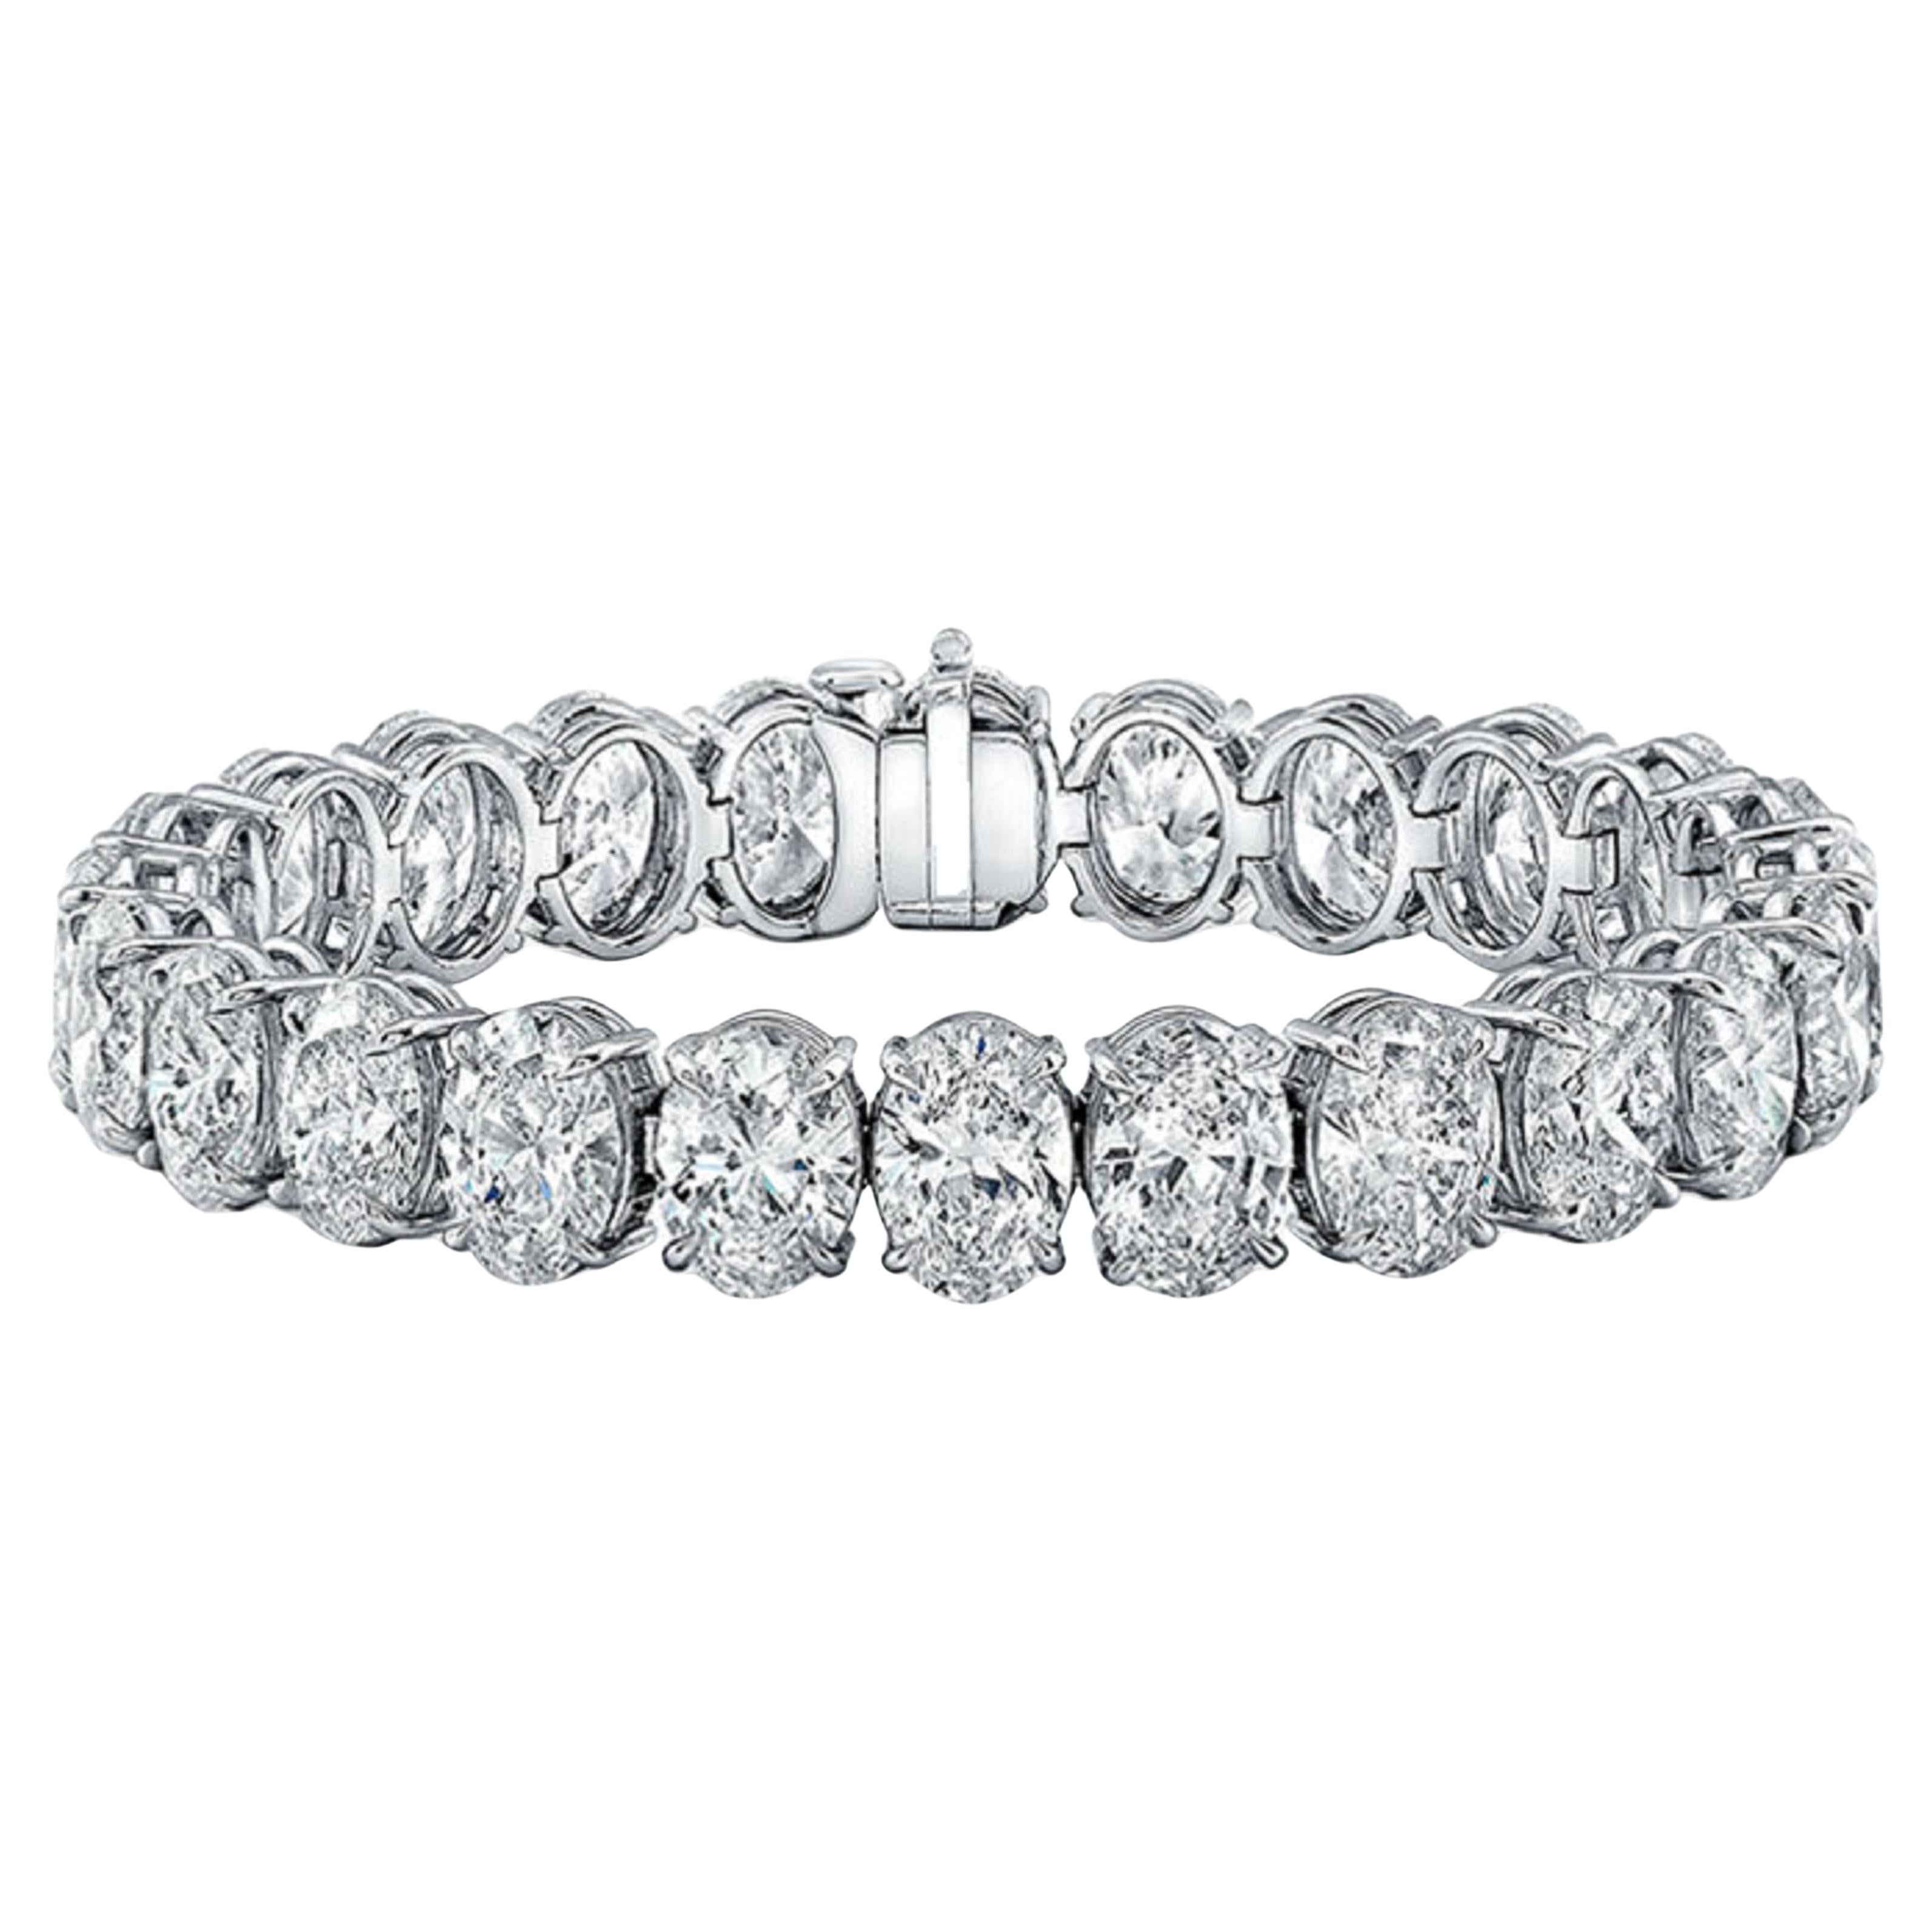 Dieses exquisite Armband von Antinori di Sanpietro ROMA ist mit Diamanten im Ovalschliff besetzt, die insgesamt 19 Karat wiegen. Alle Steine sind sehr weiß und perfekt aufeinander abgestimmt.  Ein sehr elegantes und zeitloses Stück.  
Die Farbe der